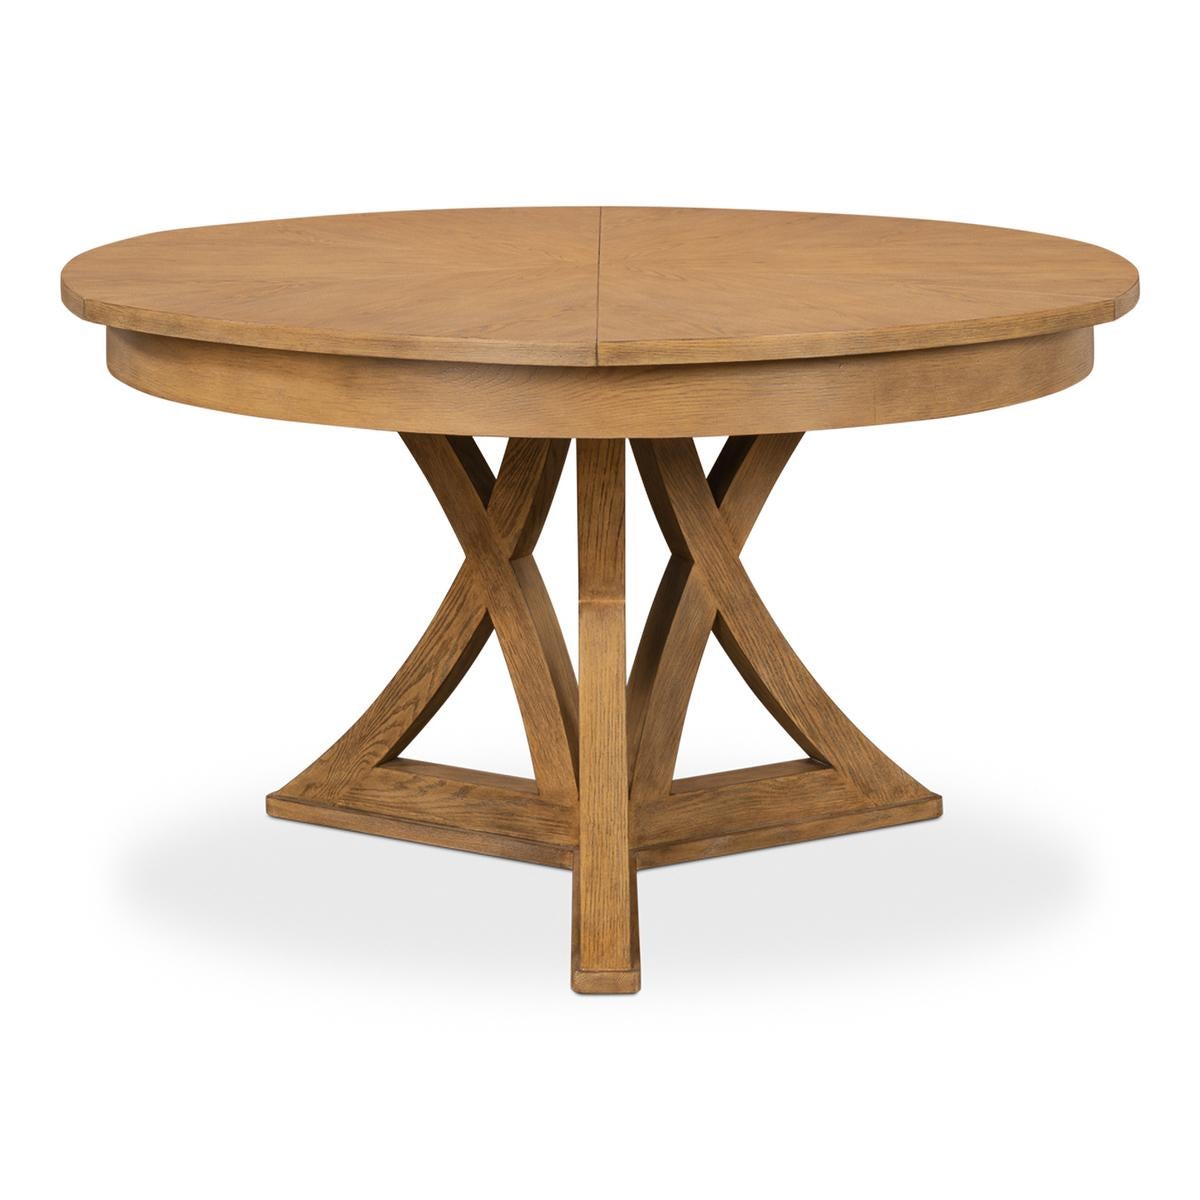 Table à manger ronde à rallonge en chêne rustique de style transitionnel. La table en chêne dans notre finition chaude est une excellente combinaison de style classique et de commodités modernes. Fermée, elle mesure 54